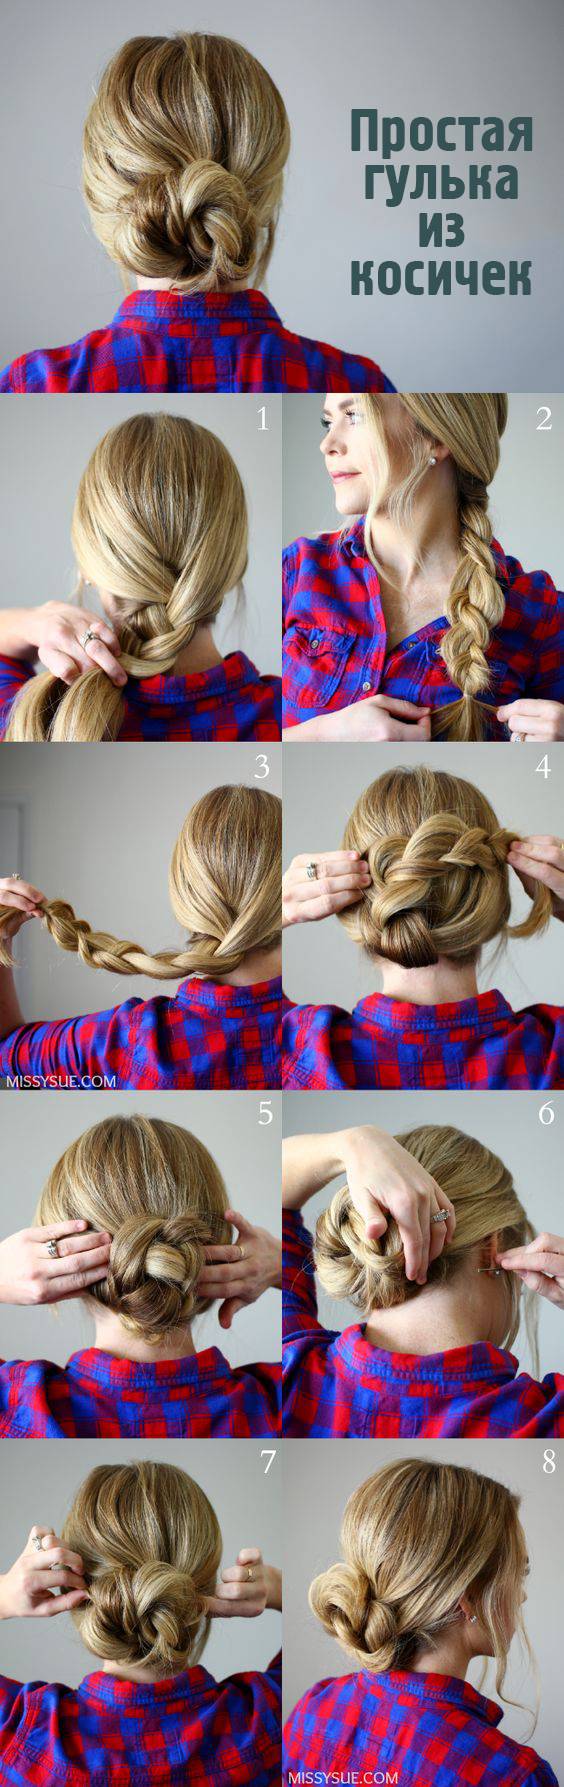 JamAdvice_com_ua_weaving-of-braids-step-by-step-7